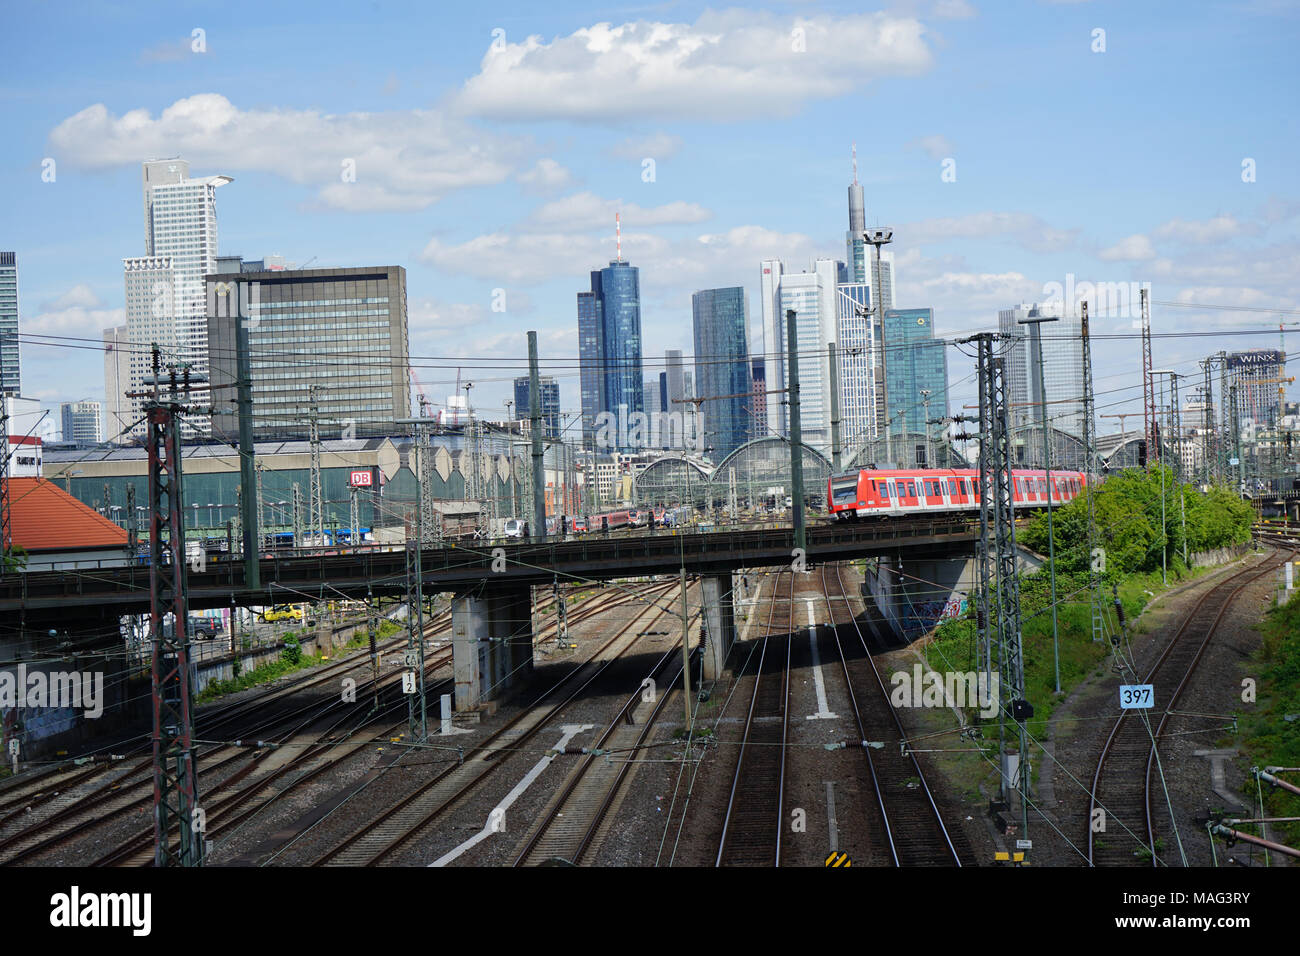 S-Bahn fährt über eine Brücke, Gleise zum Frankfurter Hauptbahnhof, Skyline, Frankfurt, Deutschland, Europa Banque D'Images